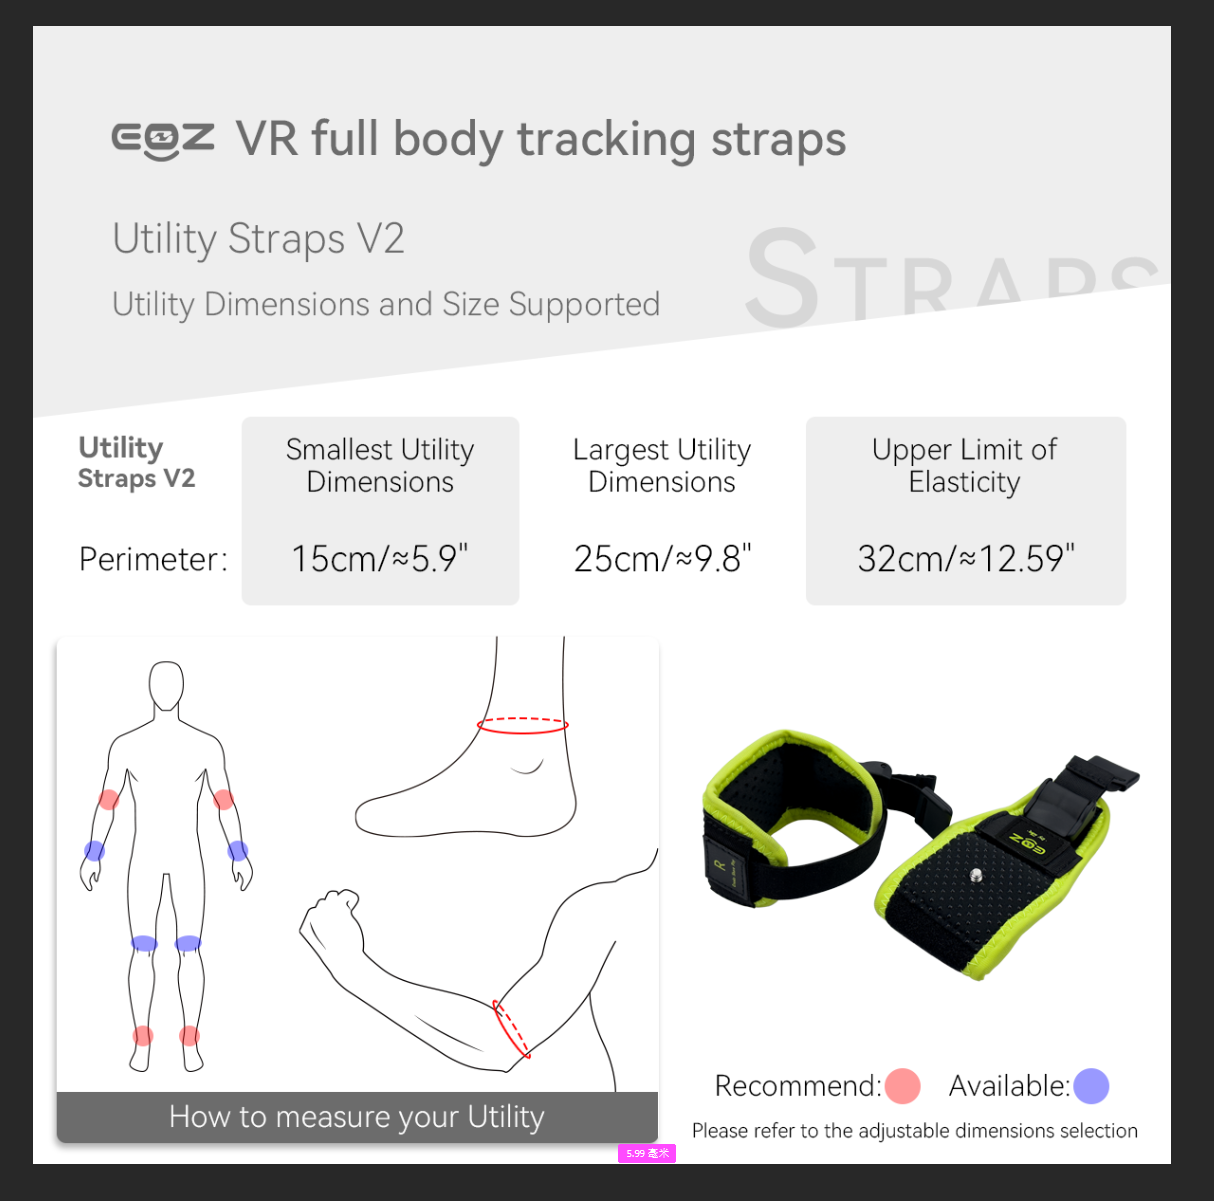 1. EOZ VR Straps for full body tracking